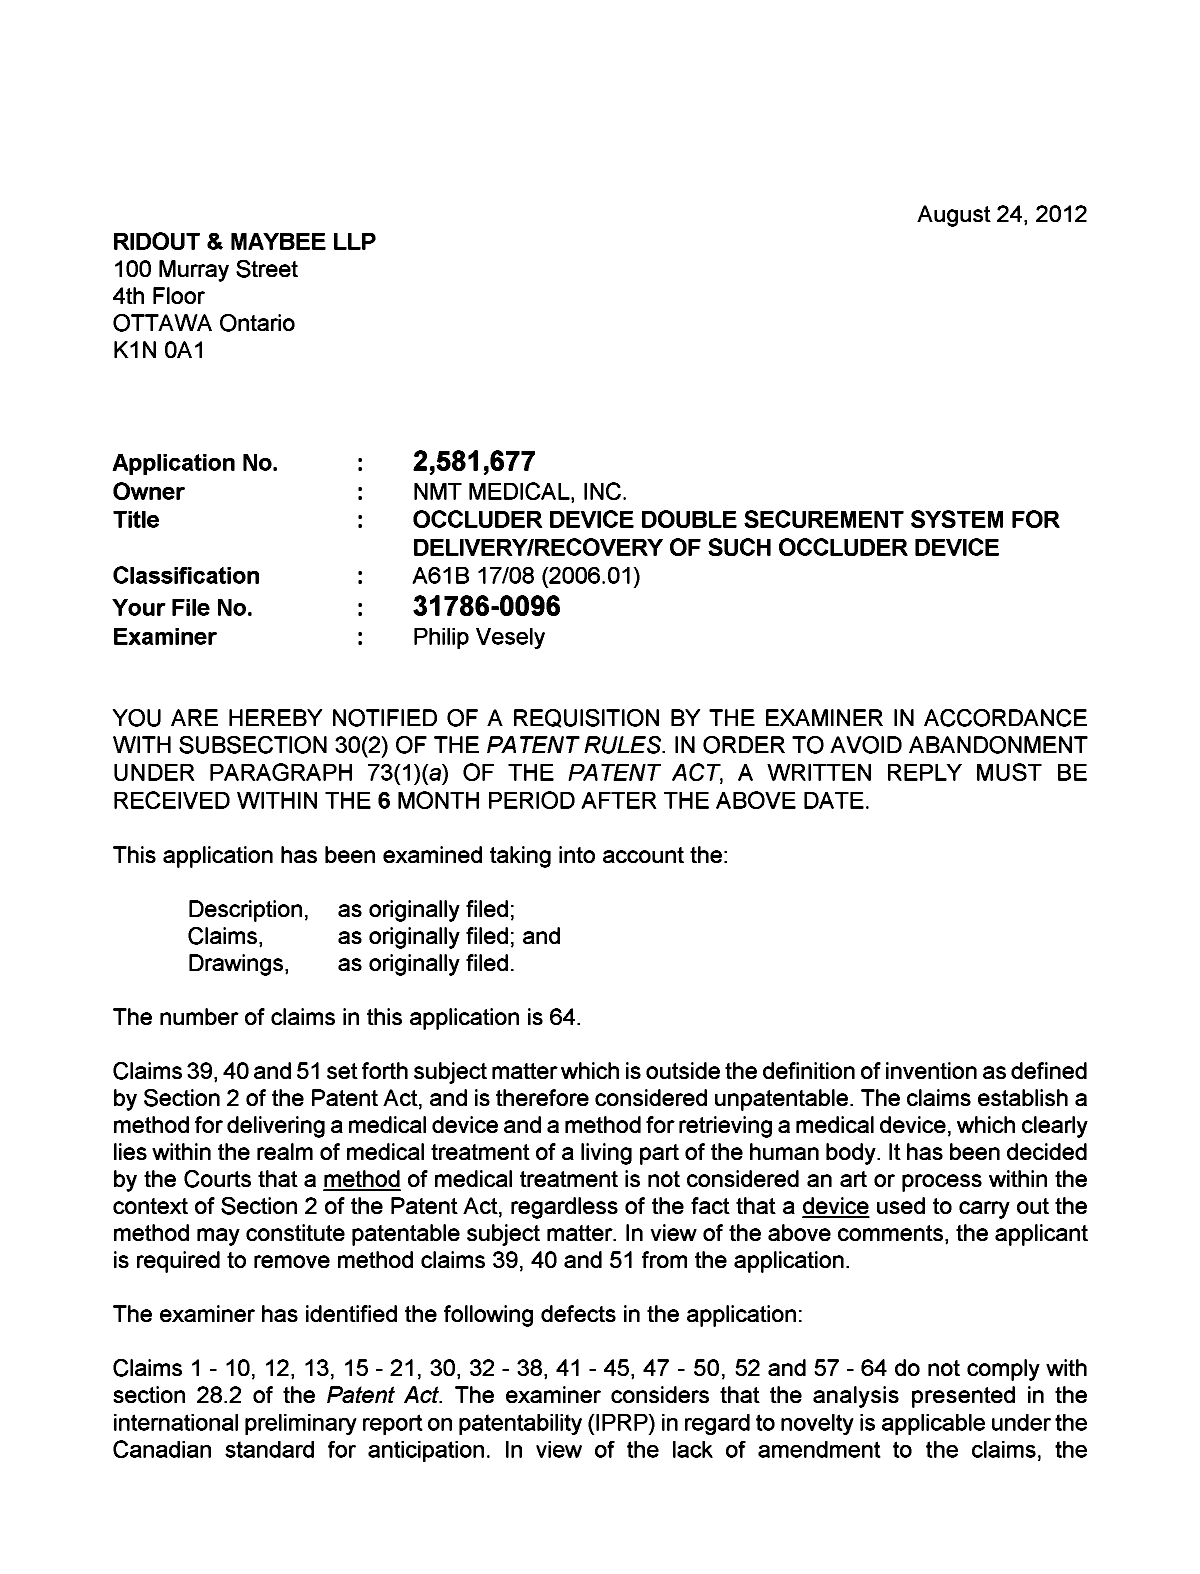 Document de brevet canadien 2581677. Poursuite-Amendment 20120824. Image 1 de 2